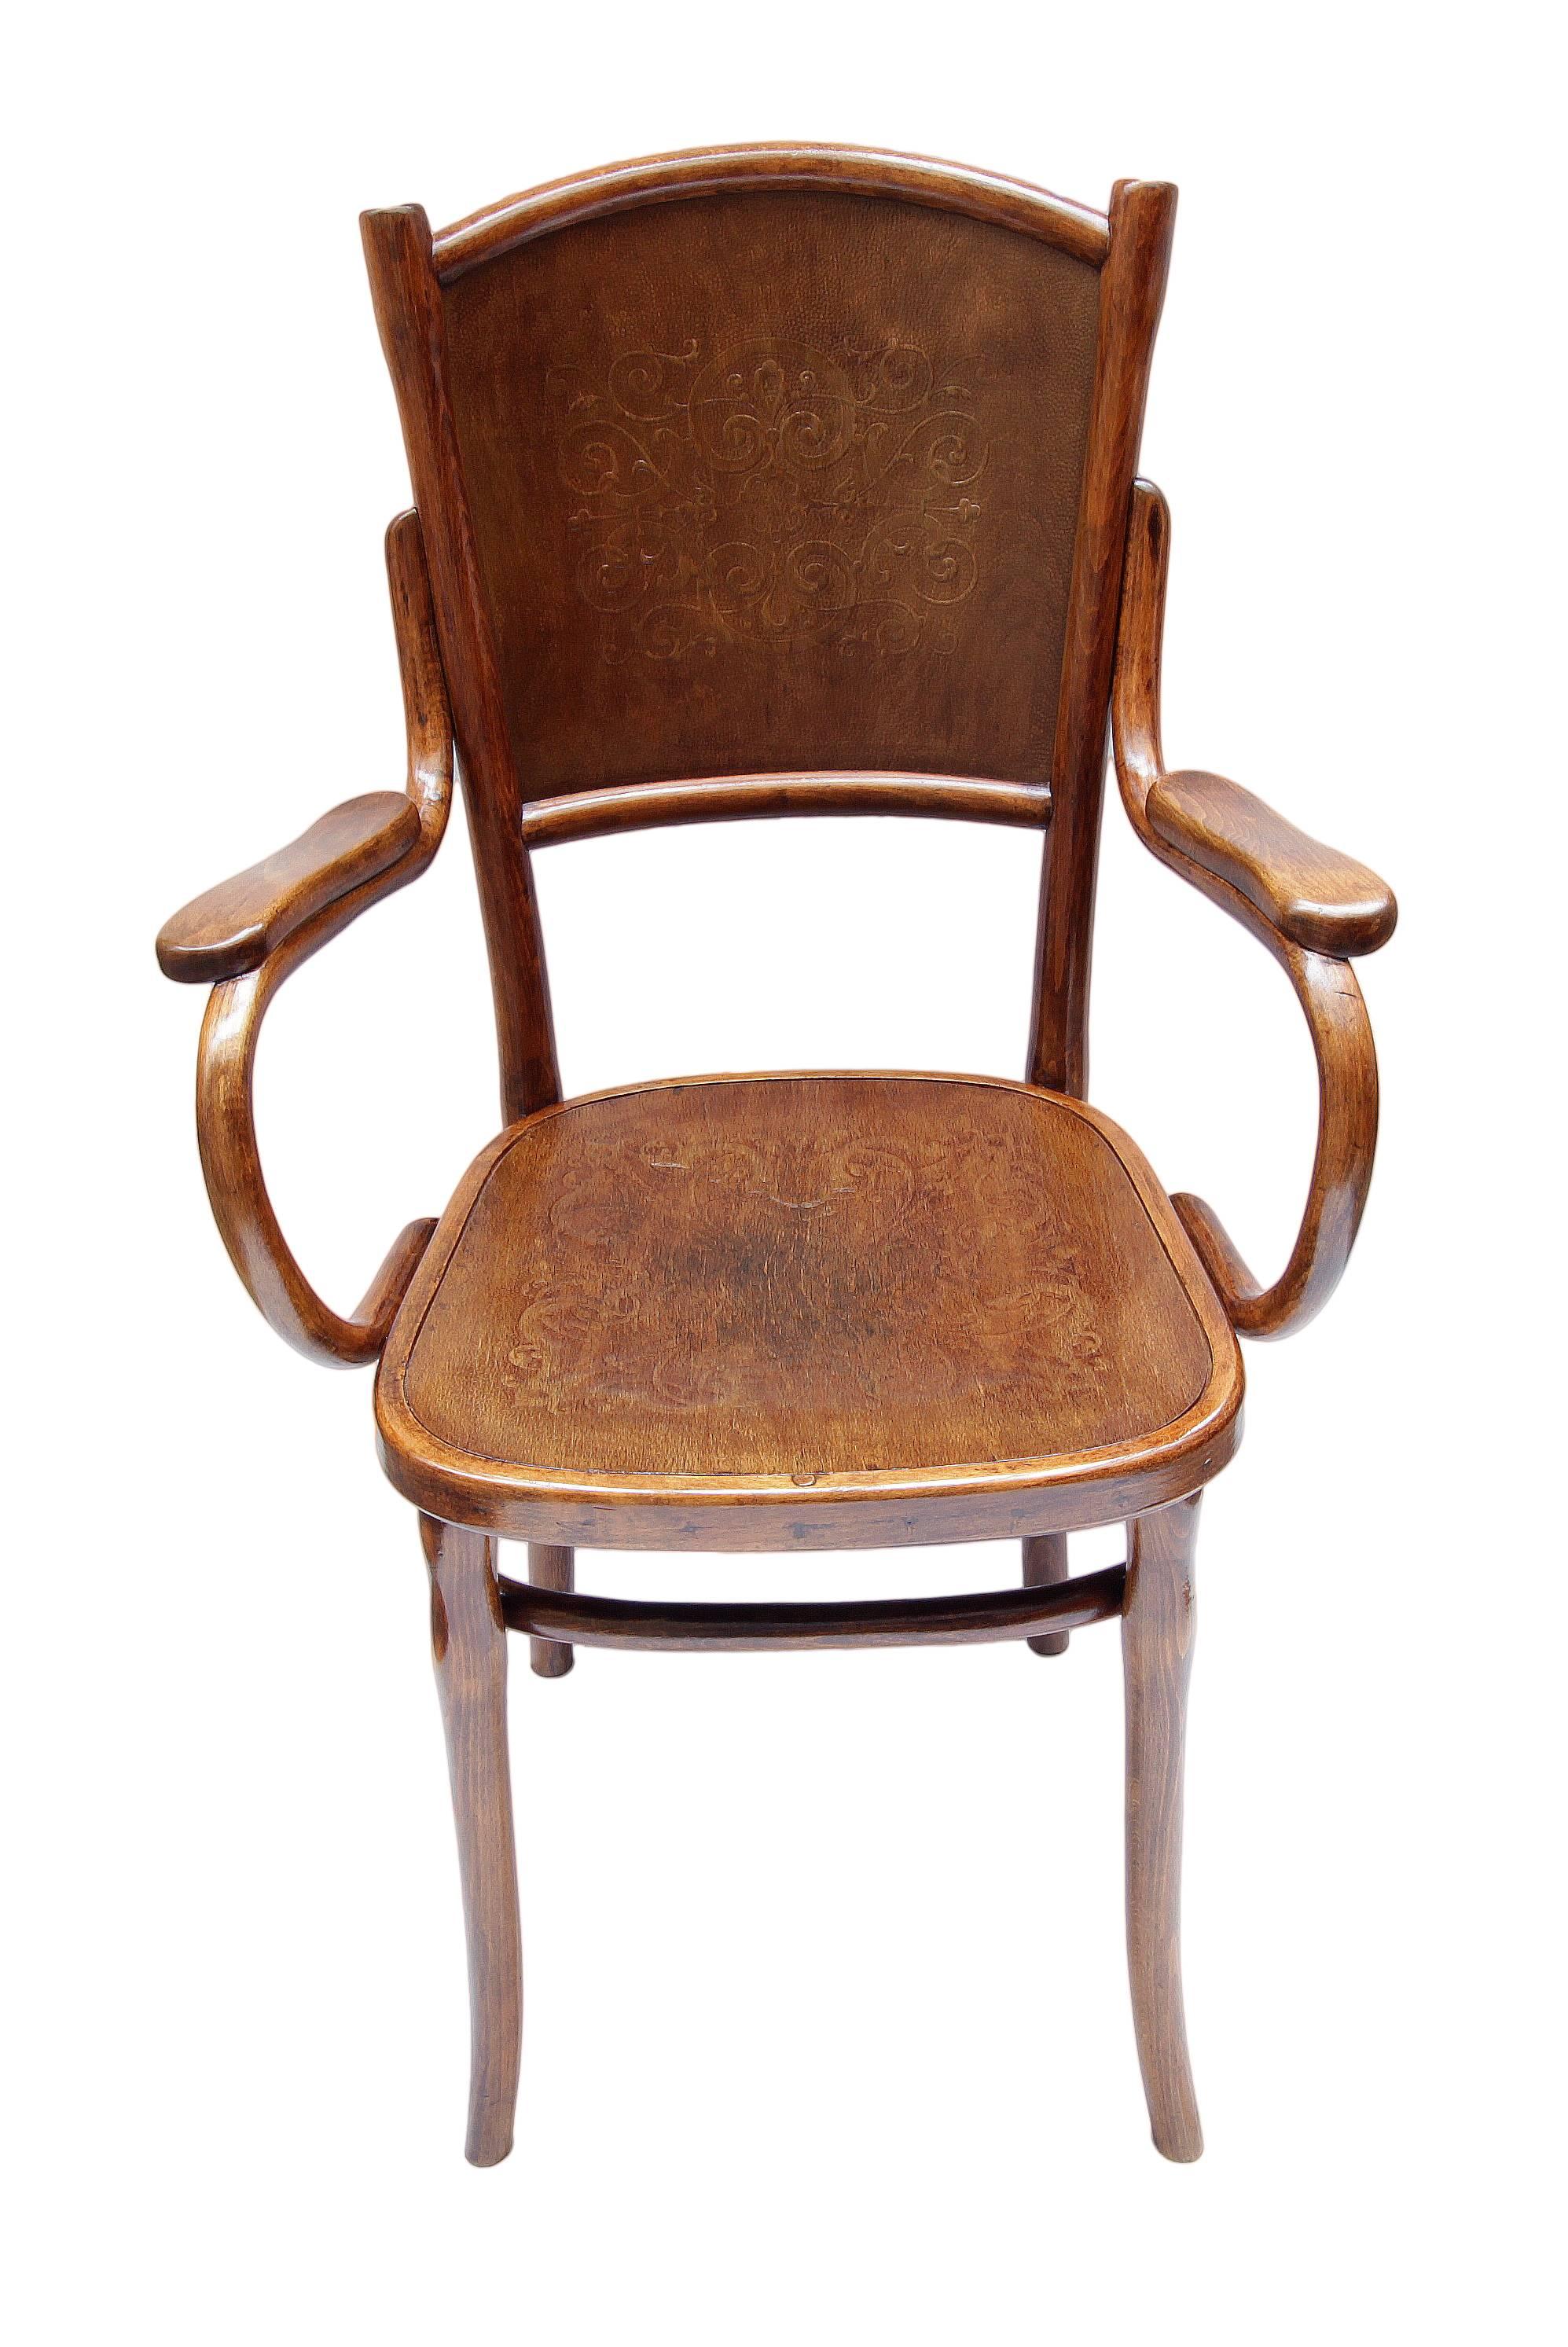 Schöner Sessel aus der Zeit des Jugendstils. Hergestellt aus Bugholz, nach dem Prinzip wie Thonet oder Kohn, aber nicht signiert / gestempelt. Sitz- und Rückenfläche mit Reliefornamenten bedeckt. Sehr guter restaurierter Zustand.